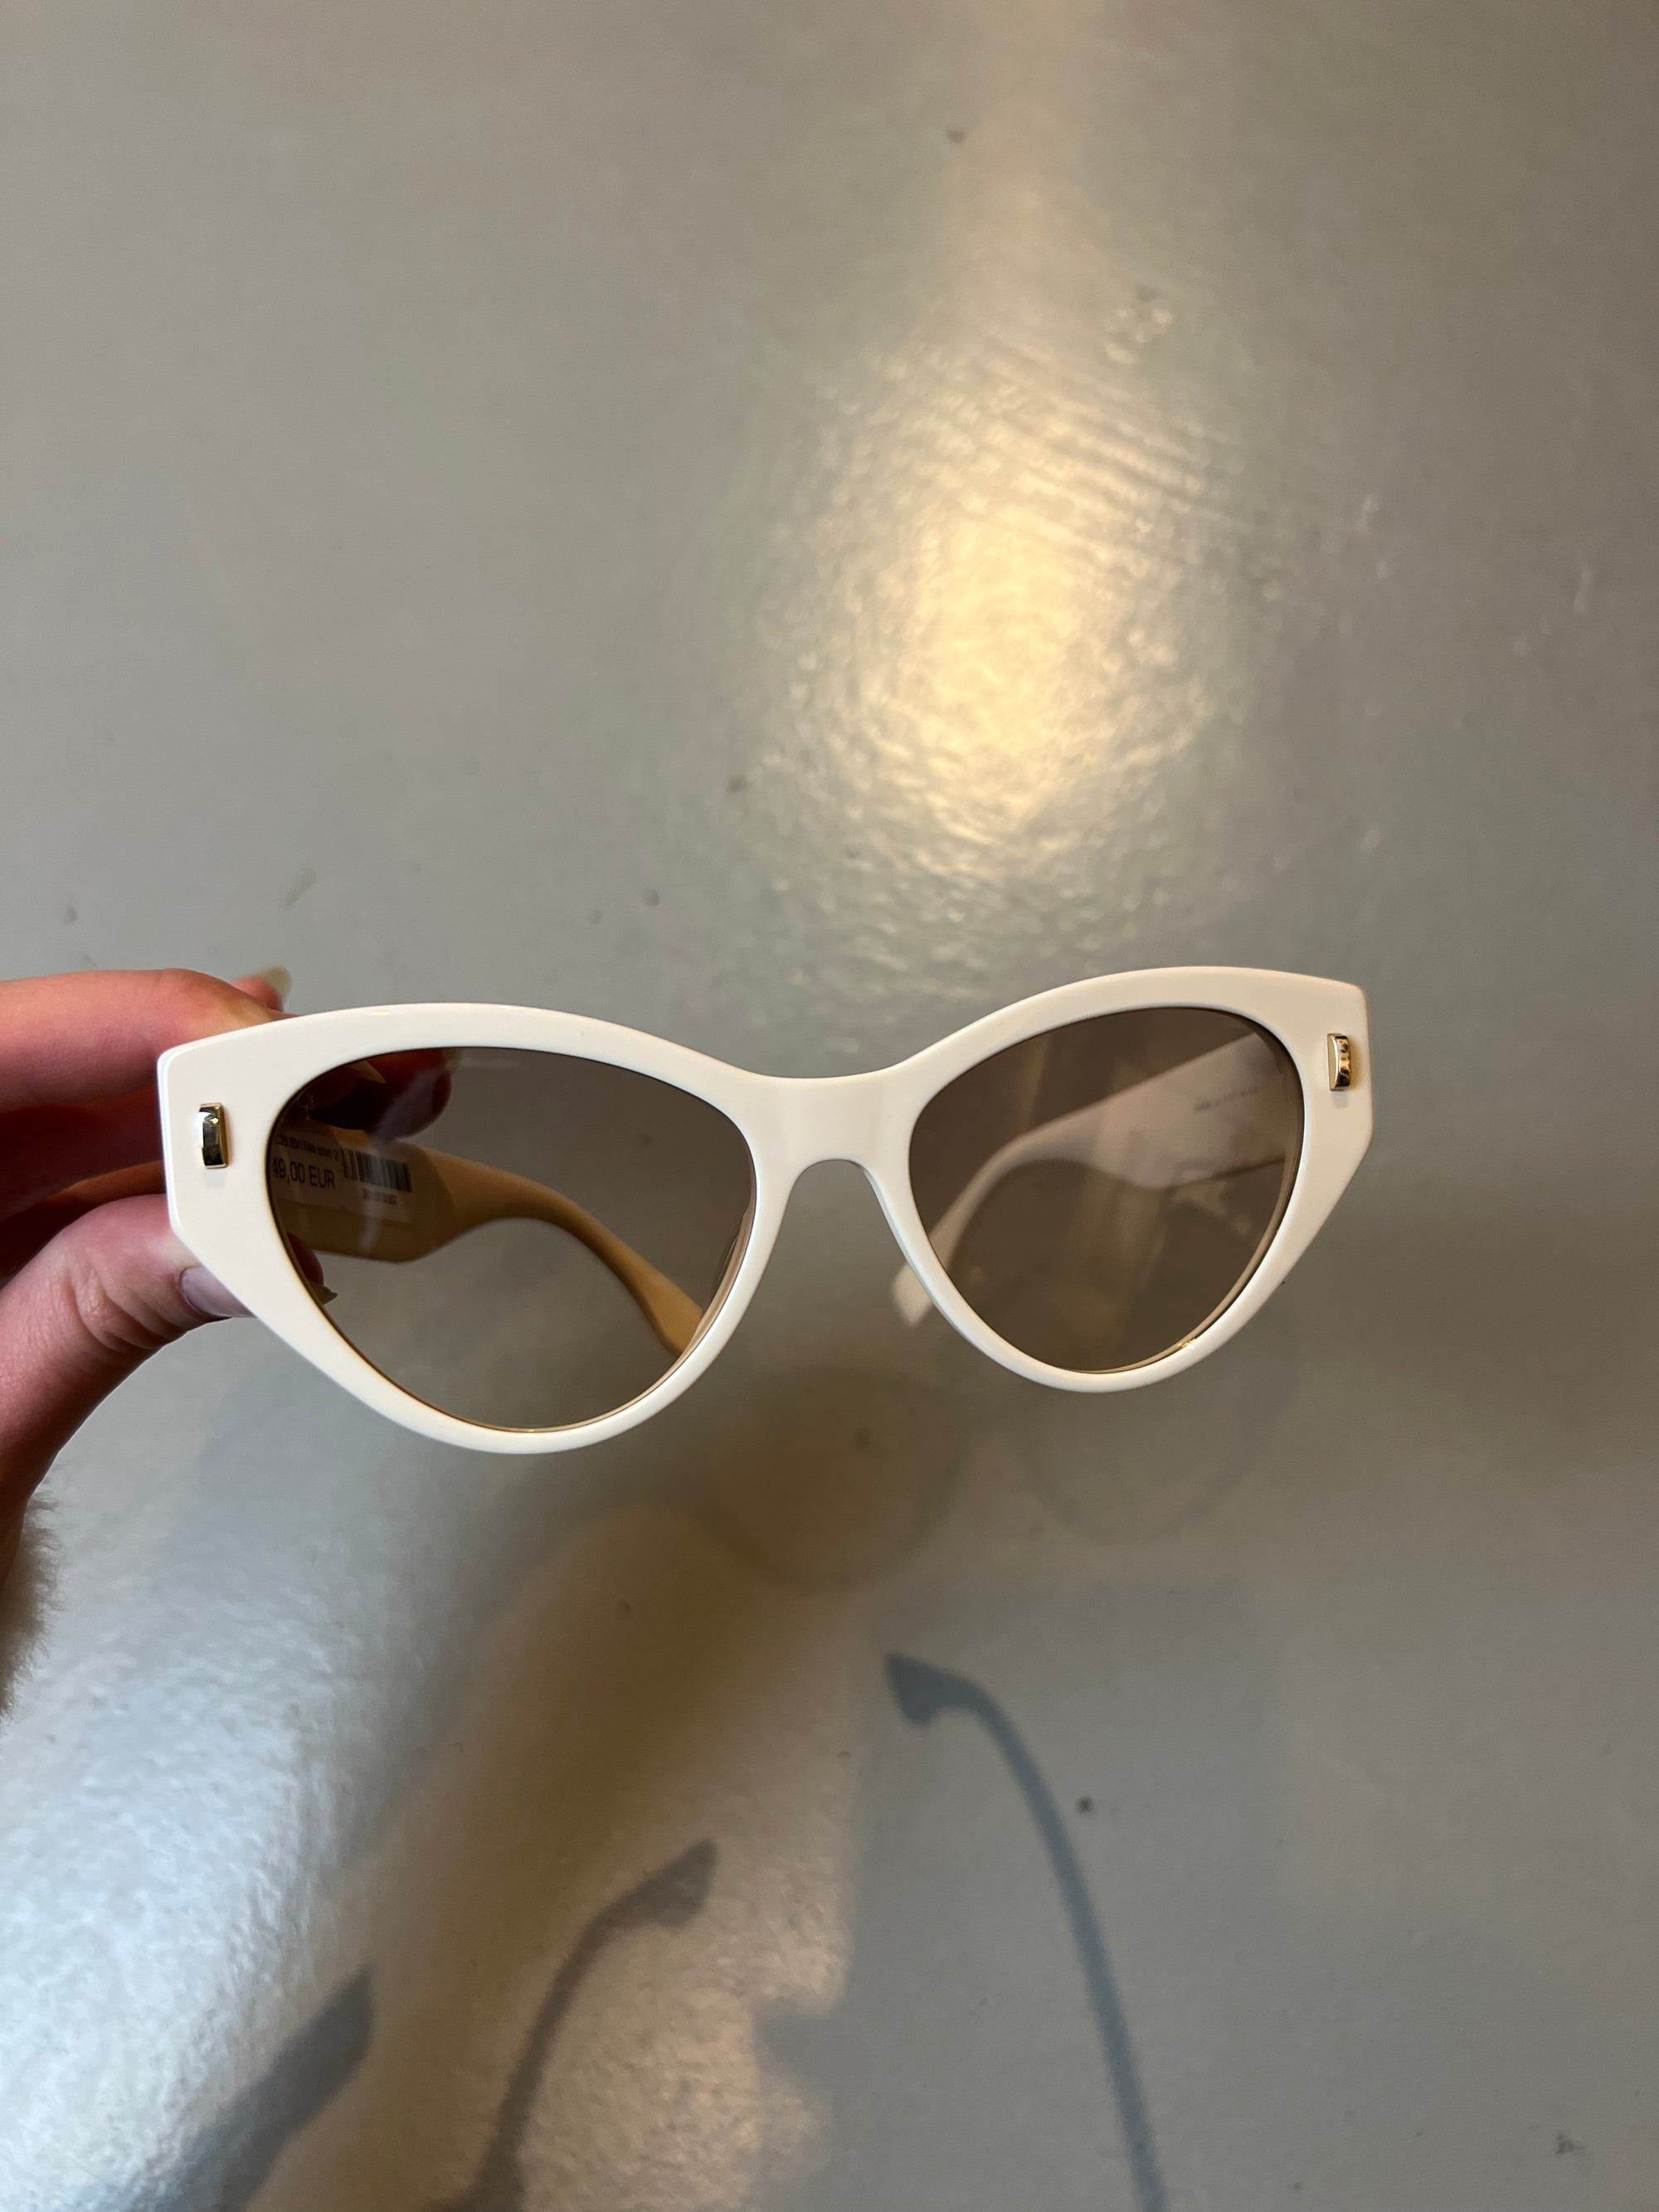 Produktbild der Fendi Beige Cateye Sunglasses von vorne  vor grauem Hintergrund.